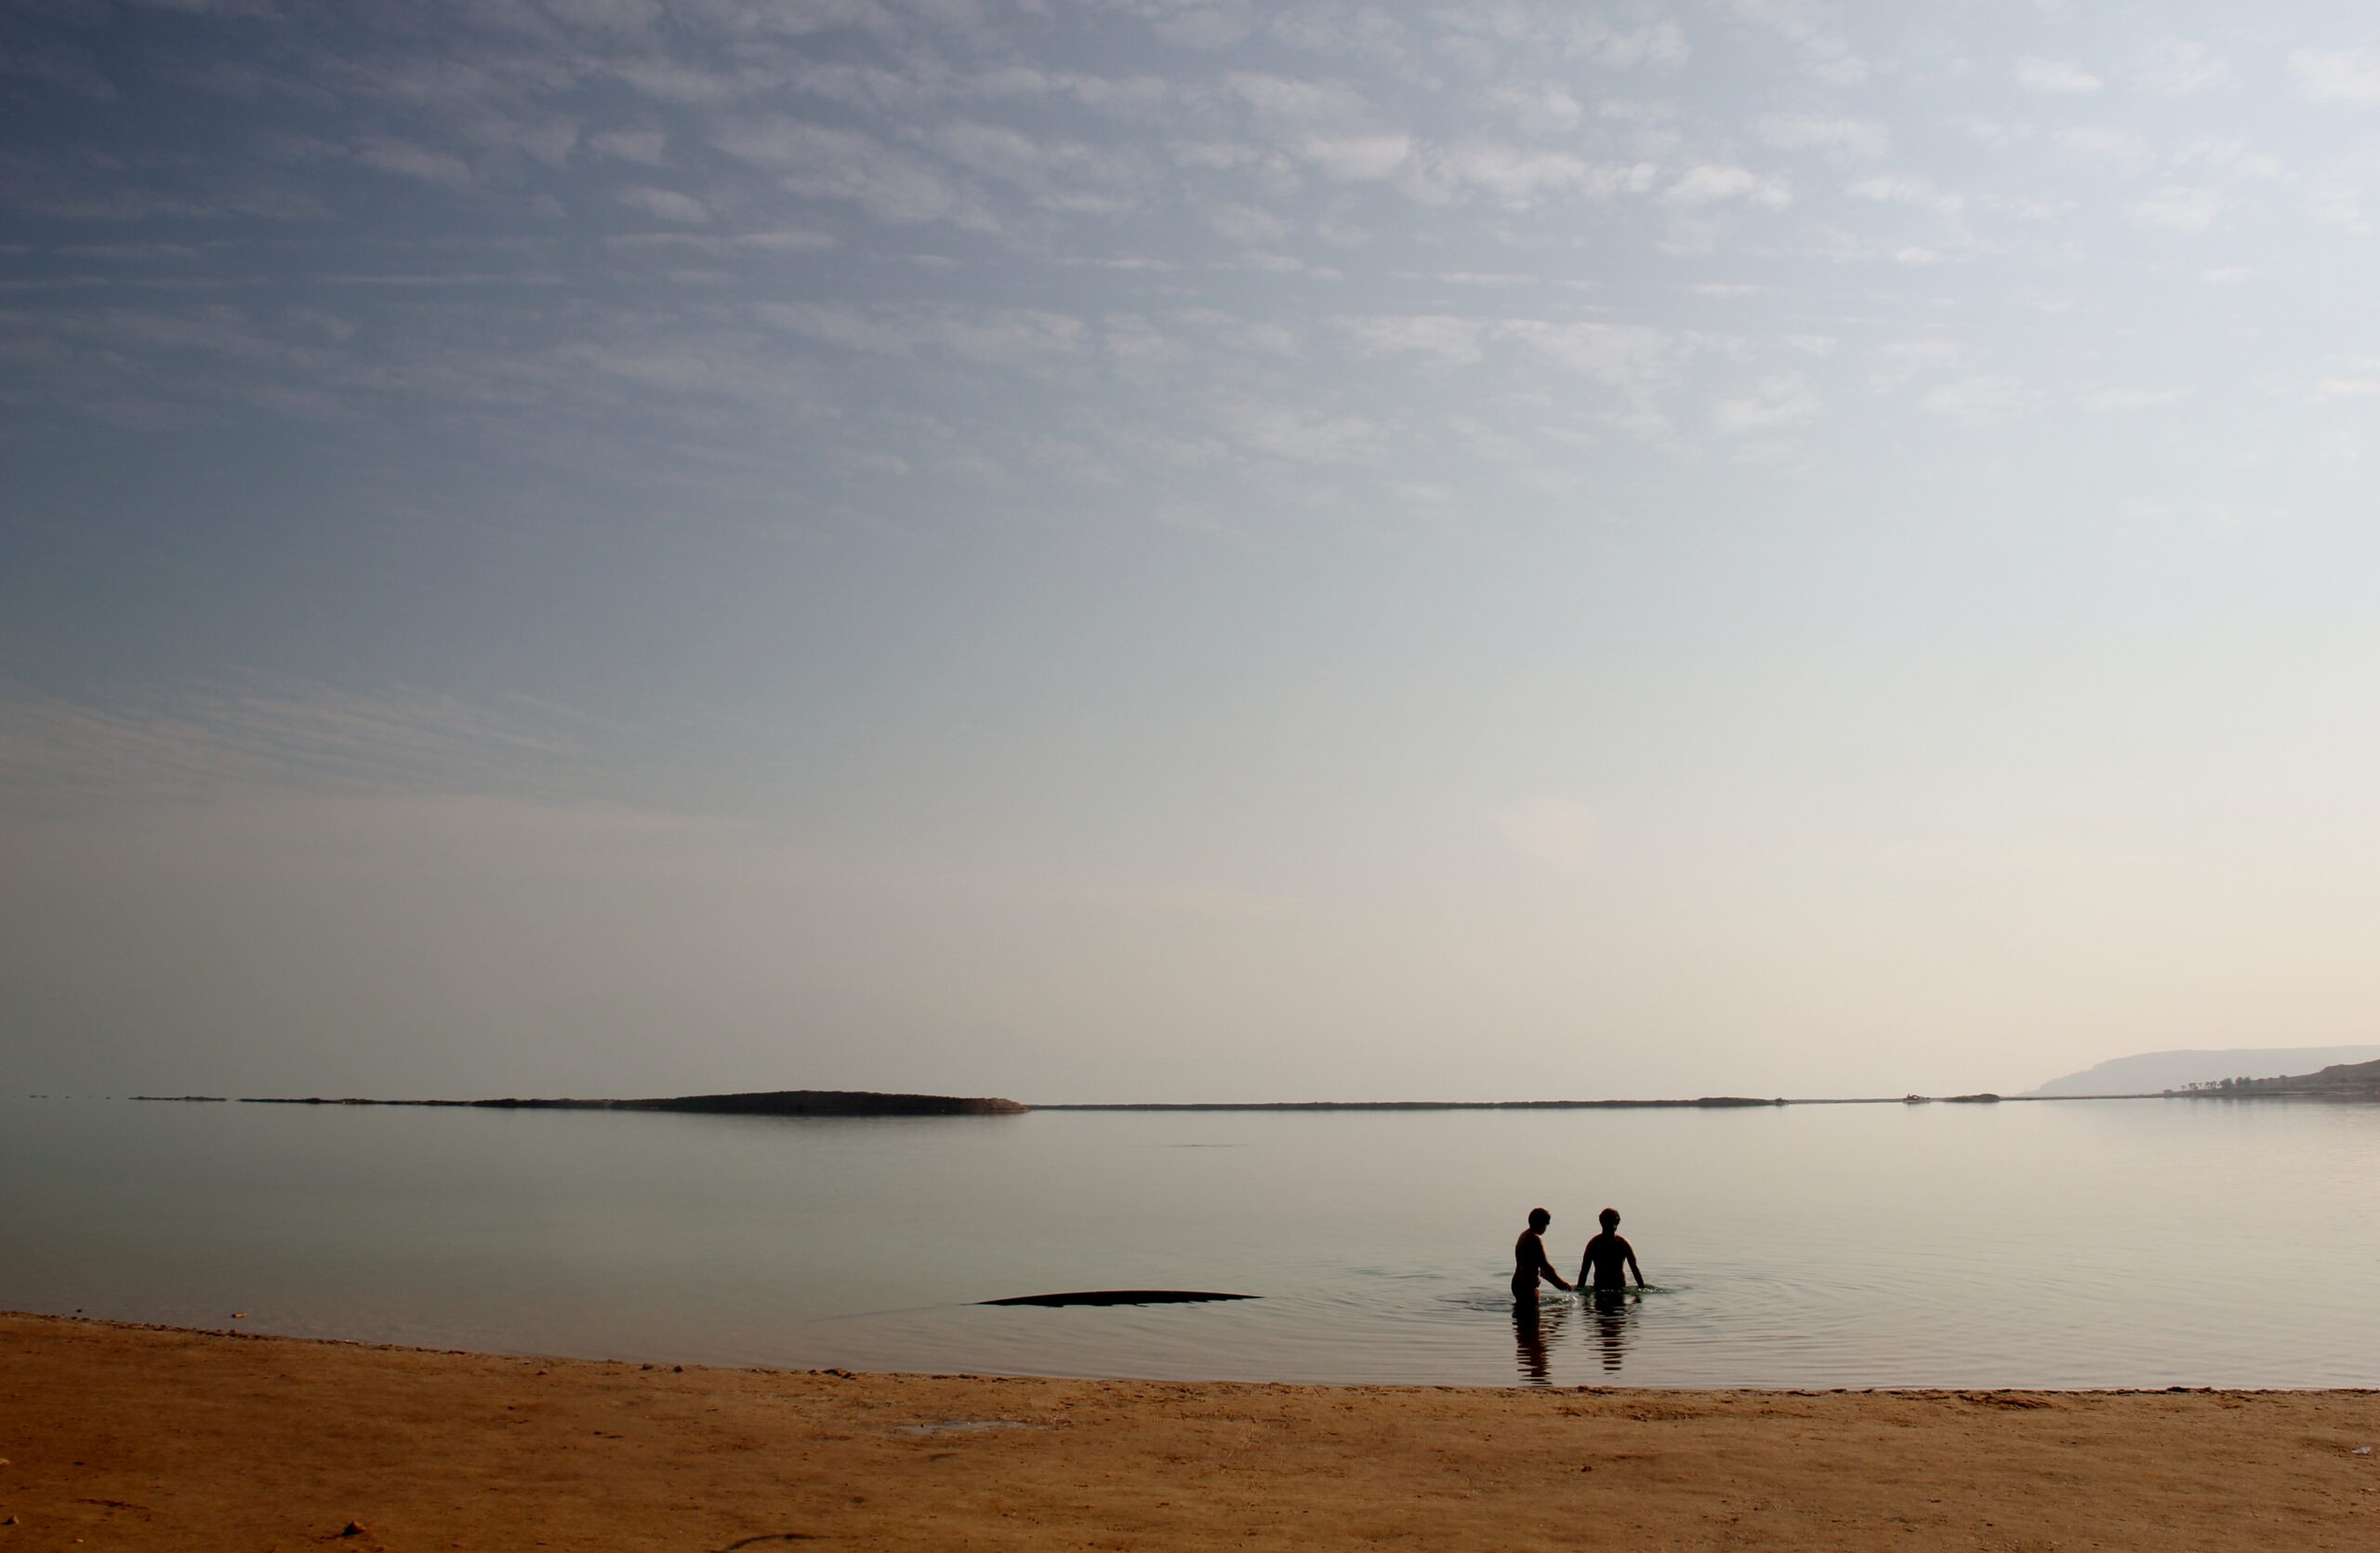 People swim at Ein Bokek's public beach on the Dead Sea in the West Bank near Jerusalem, Israel.